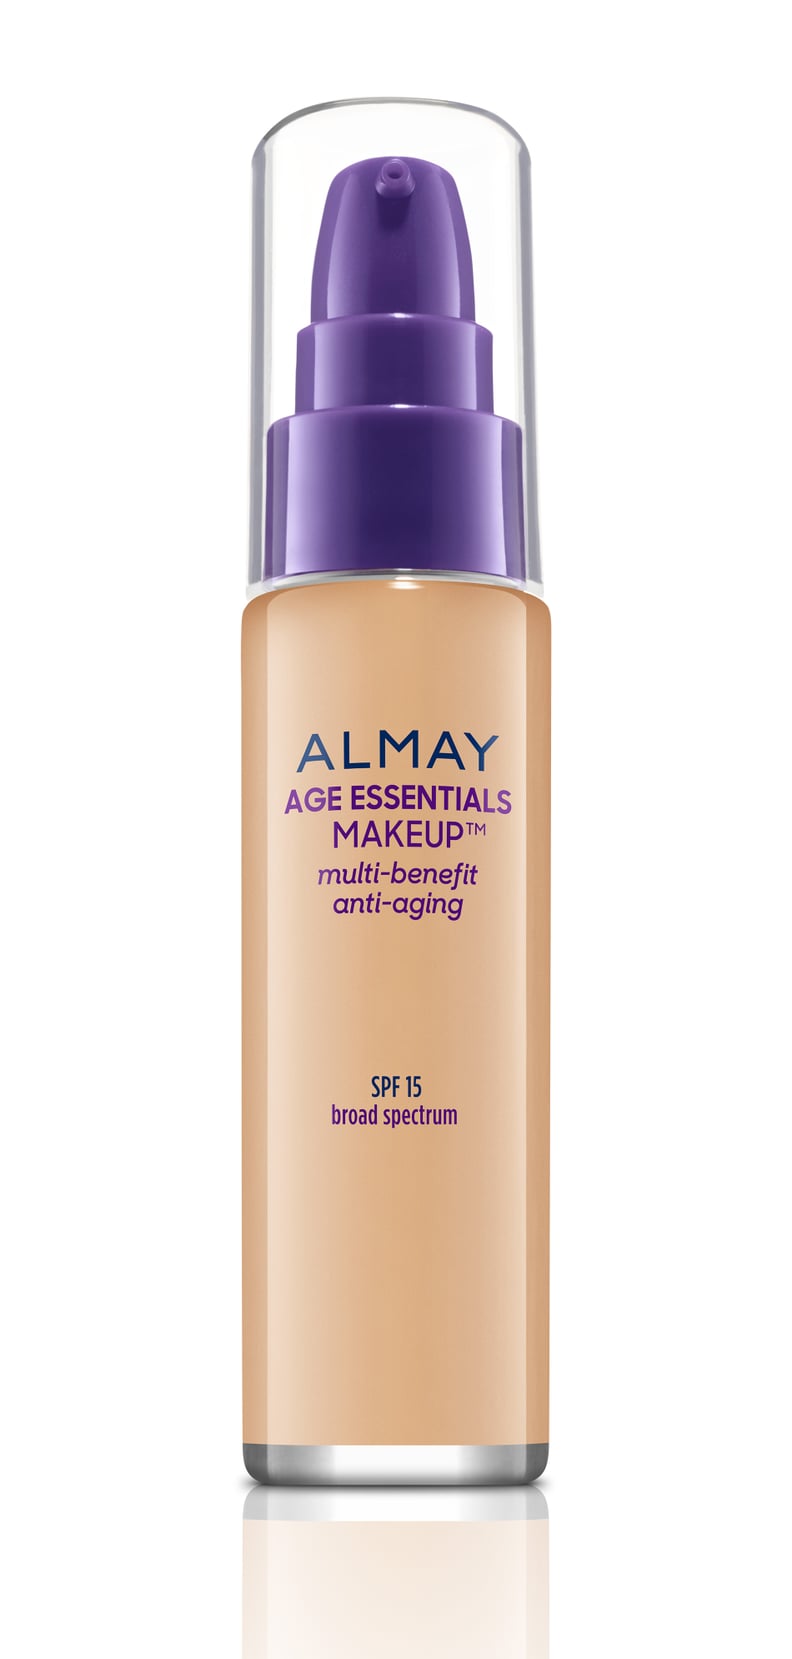 Almay Age Essentials Makeup